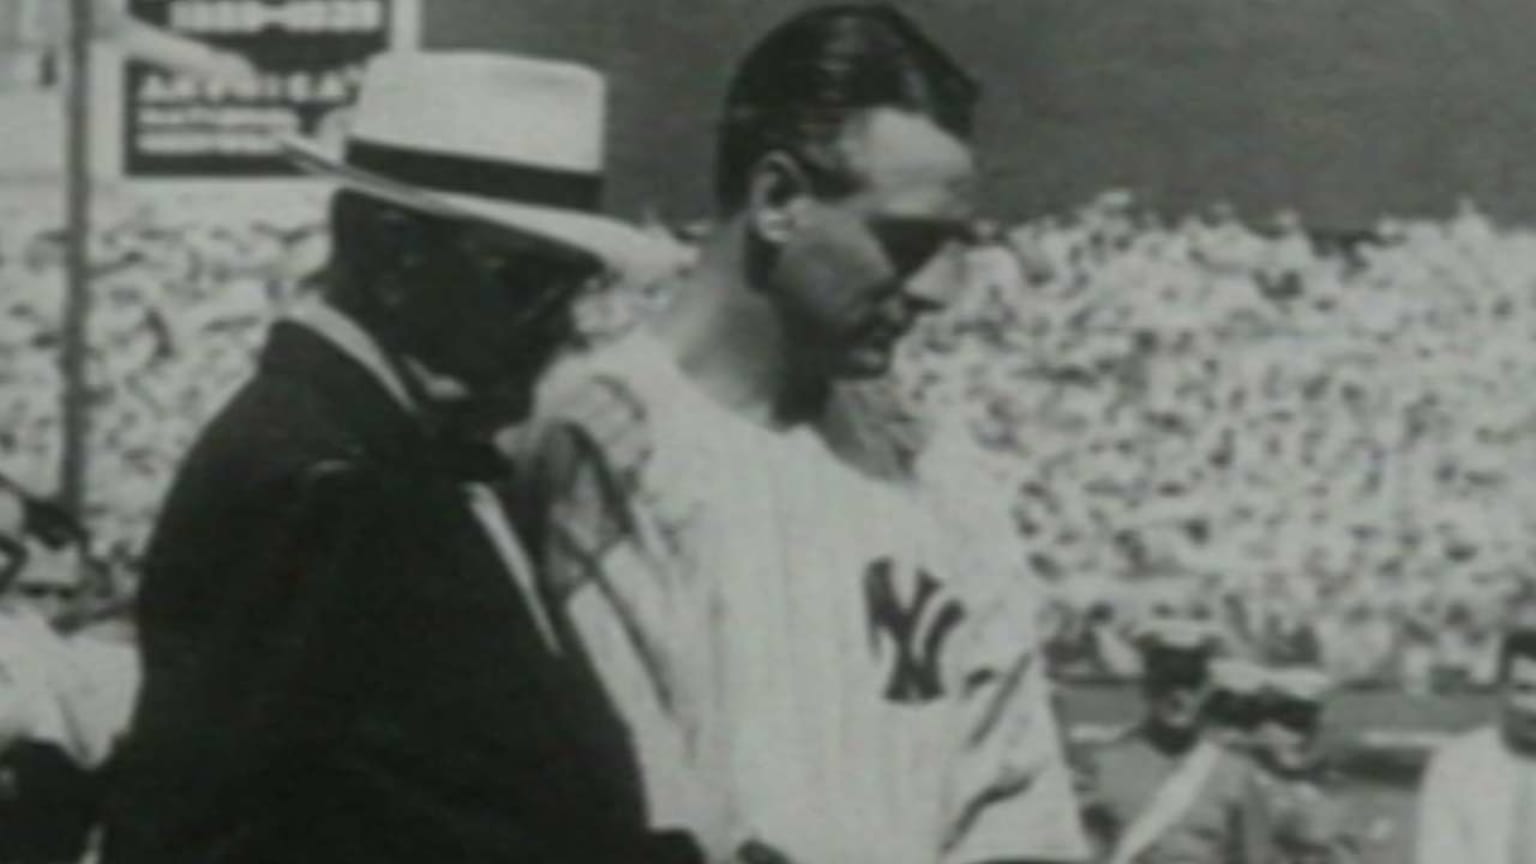 Lou Gehrig's farewell speech, 07/04/1939